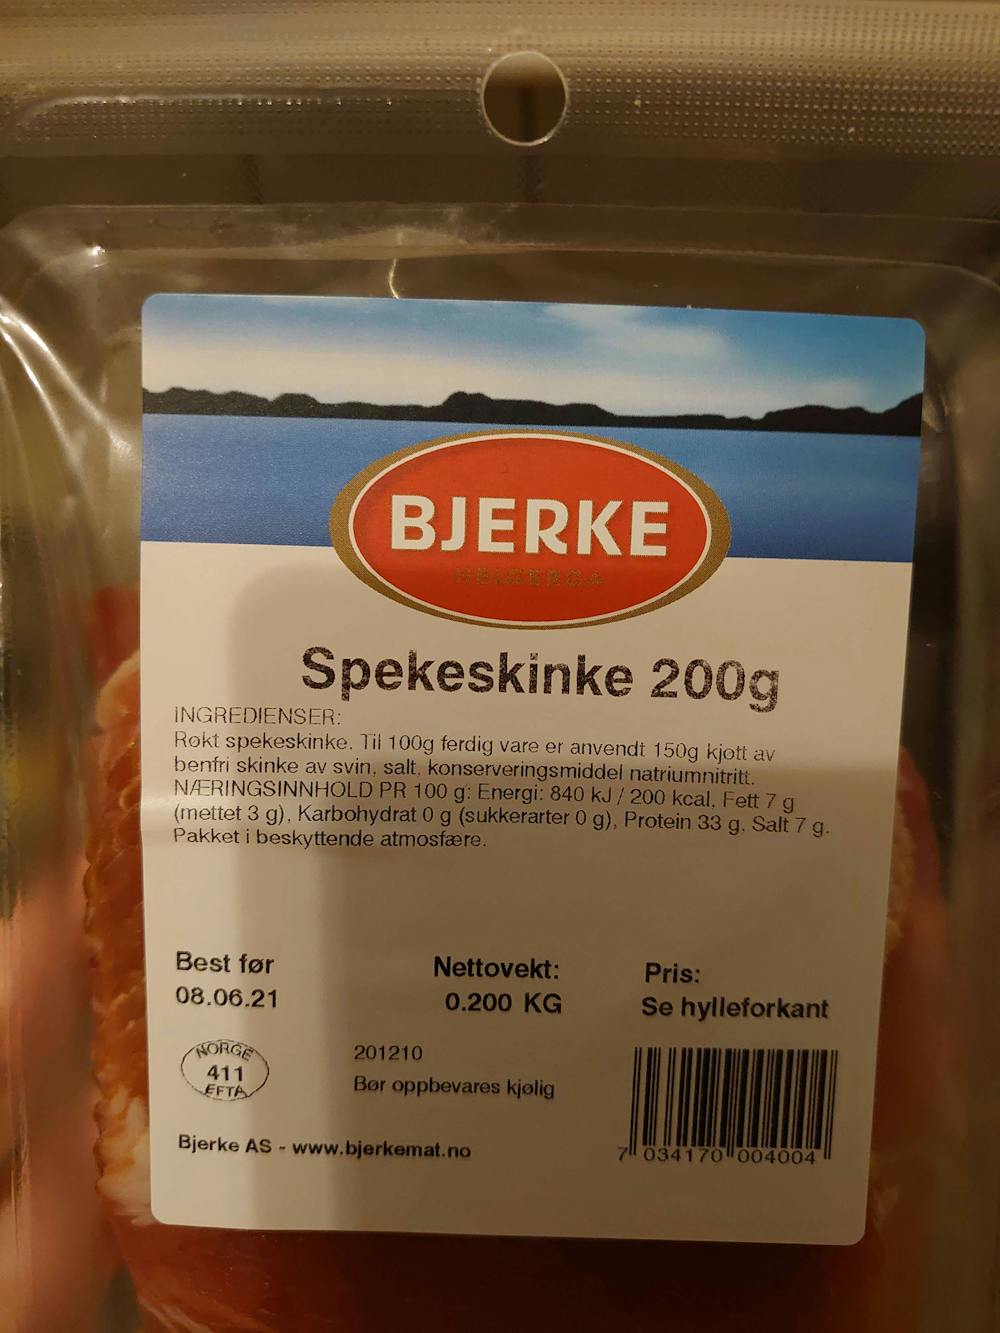 Ingredienslisten til Bjerke Spekeskinke